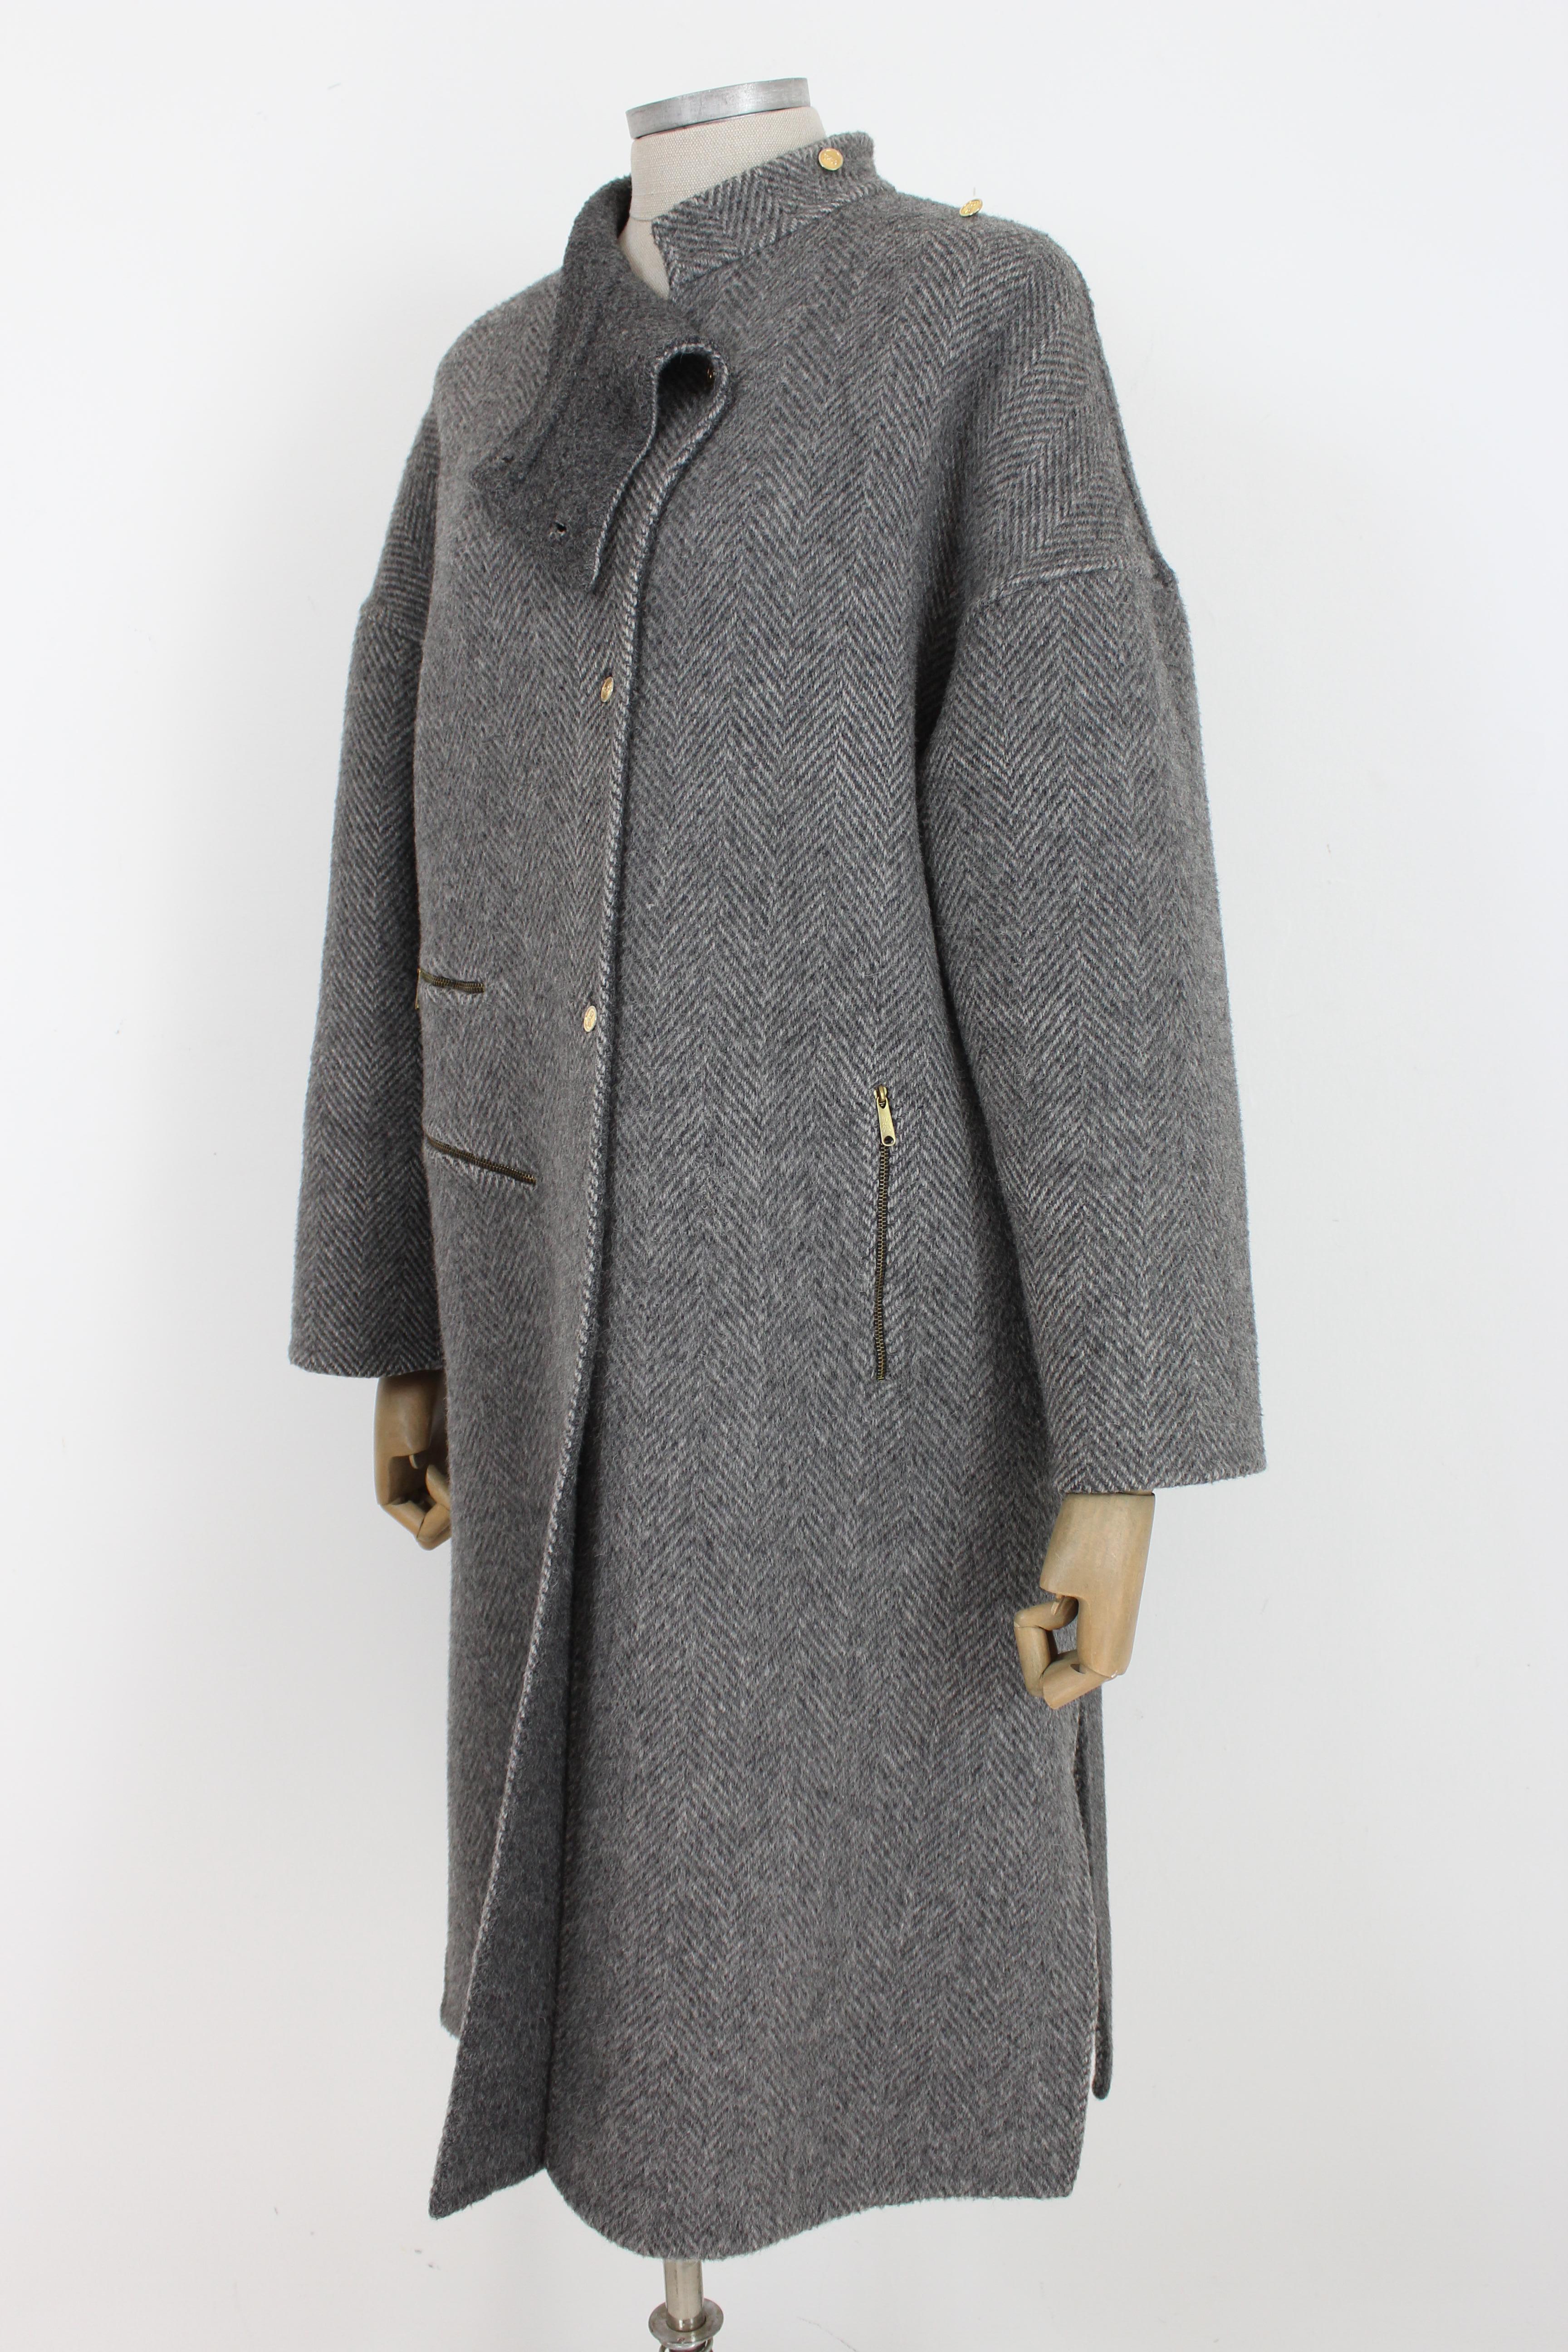 Women's Roberta di Camerino Gray Alpaca Herringbone Vintage Coat